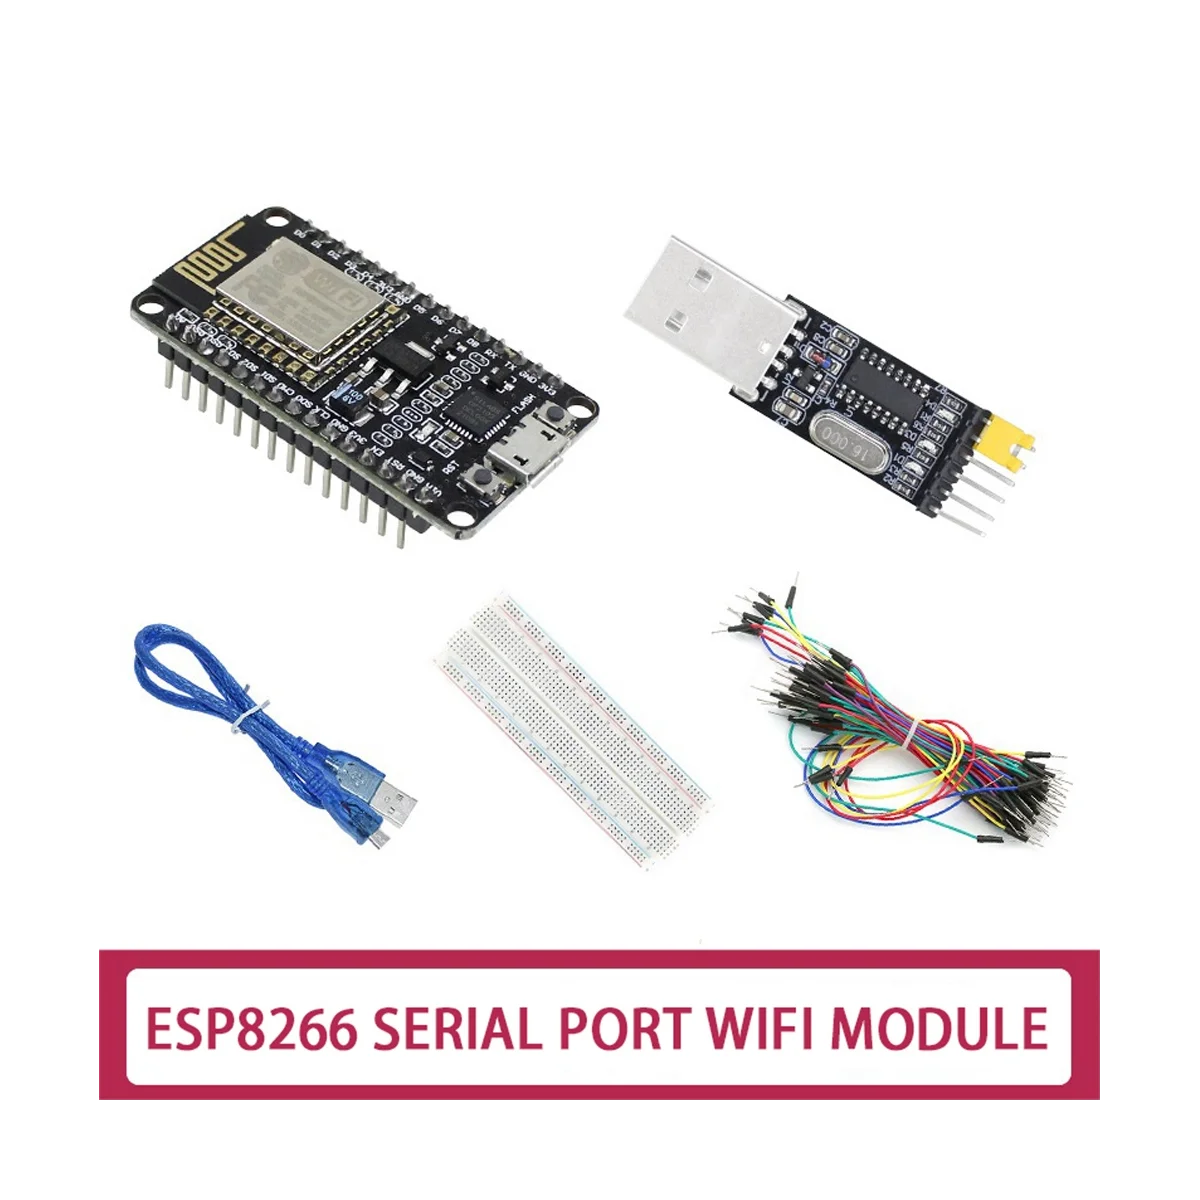 

ESP-12E ESP8266 CP2102 Nodemcu Lua V3 макетная плата WIFI + модуль последовательного порта USB + плата для хлеба + 65 перемычек + USB кабель